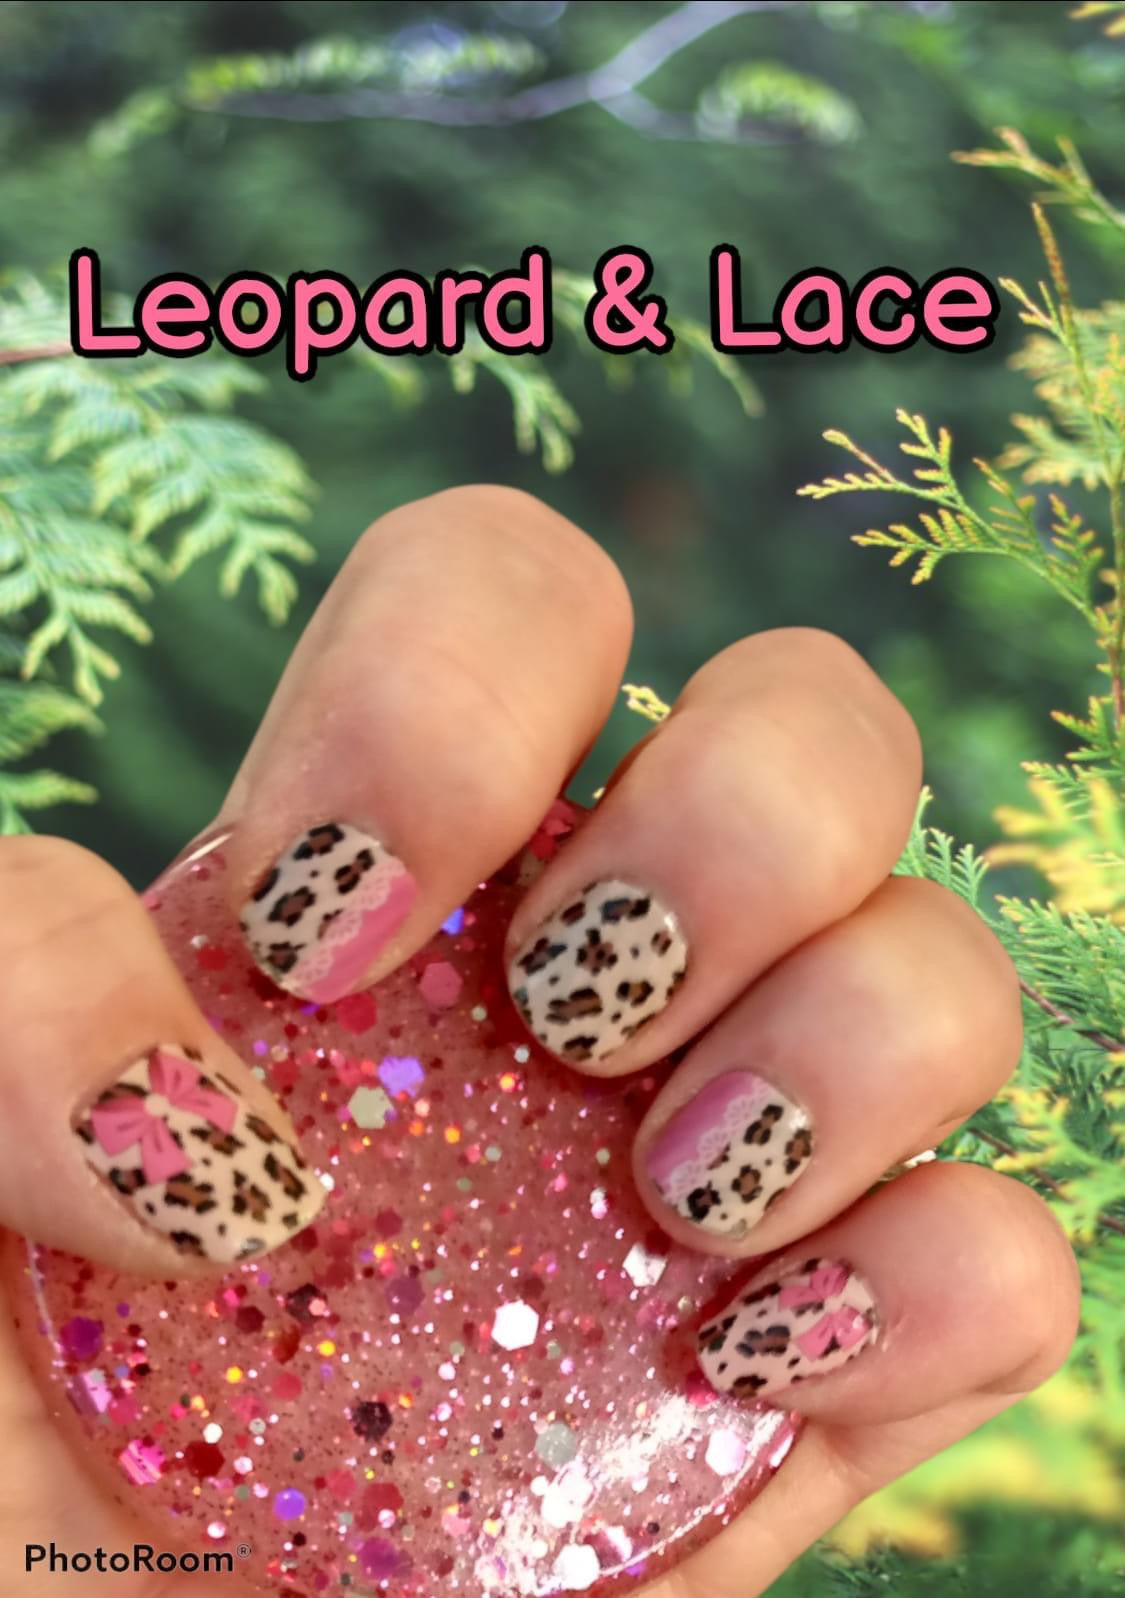 Leopard & Lace - Premium